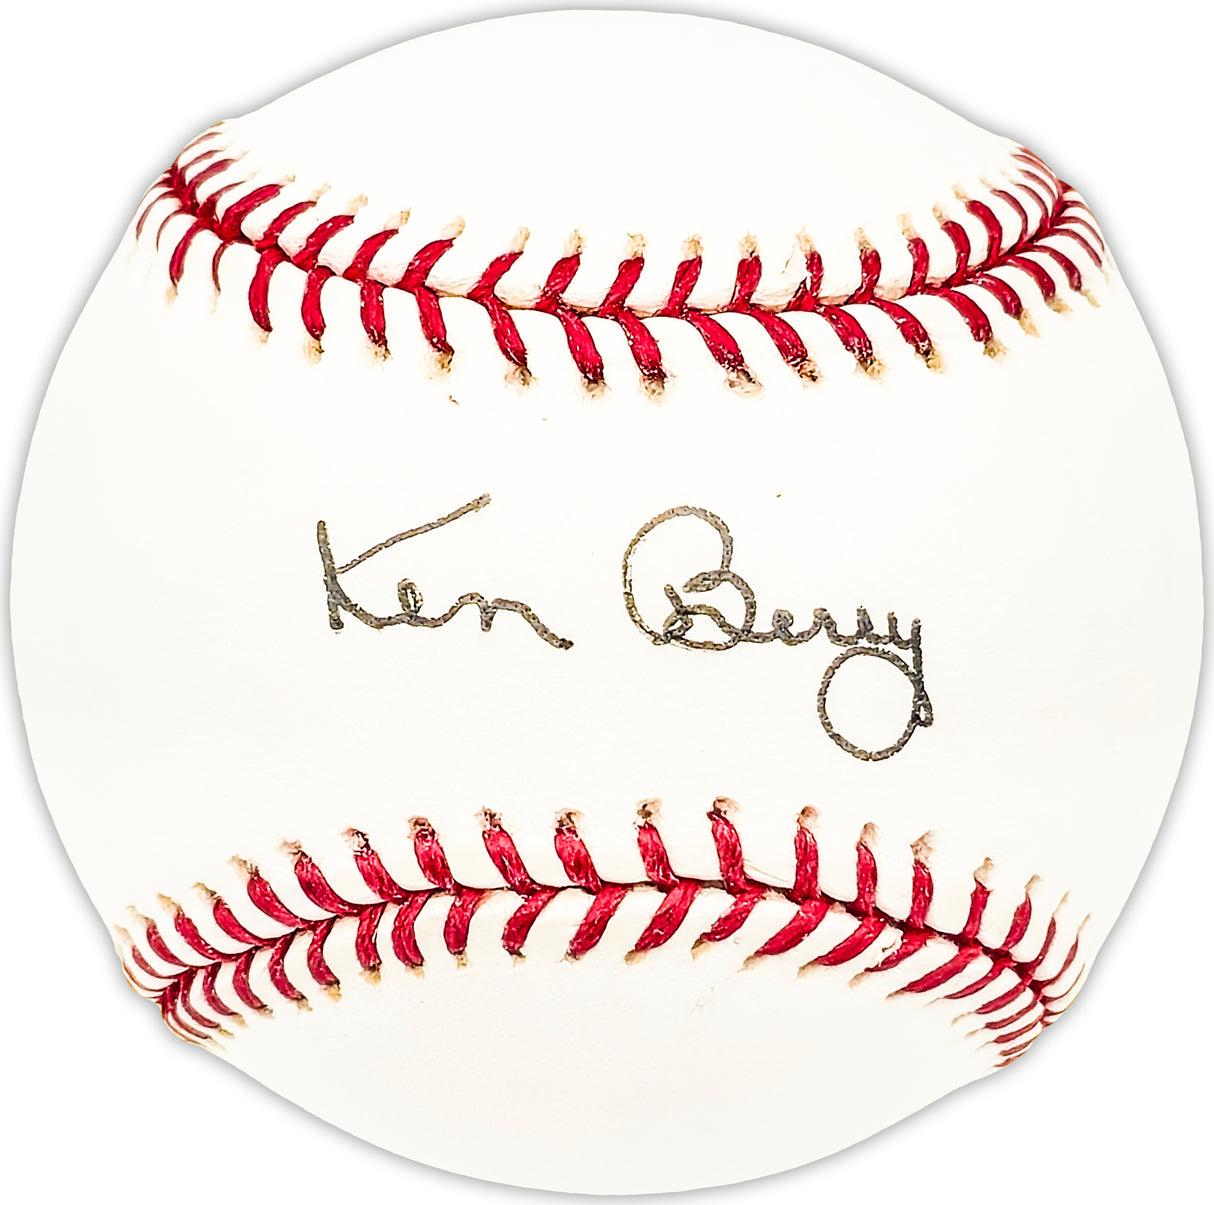 Ken Berry Autographed Official MLB Baseball Chicago White Sox Beckett BAS QR #BM25022